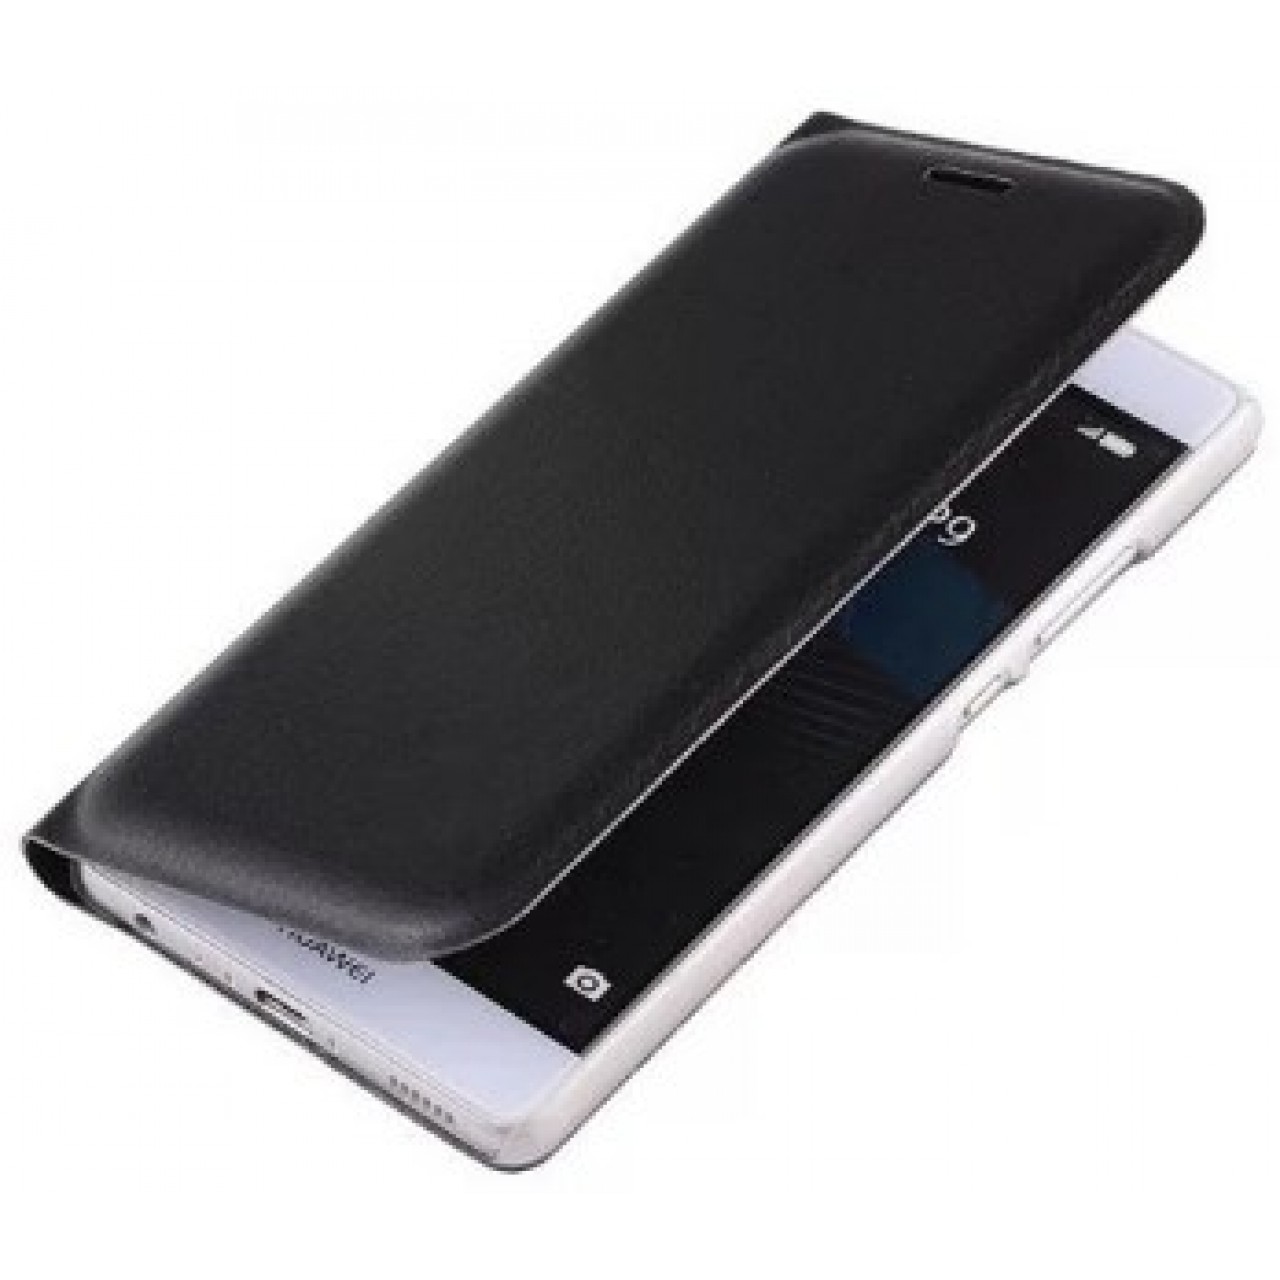 Θήκη Huawei P10 lite Slim Leather Flip Πορτοφόλι - 3349 - Μαύρο - OEM